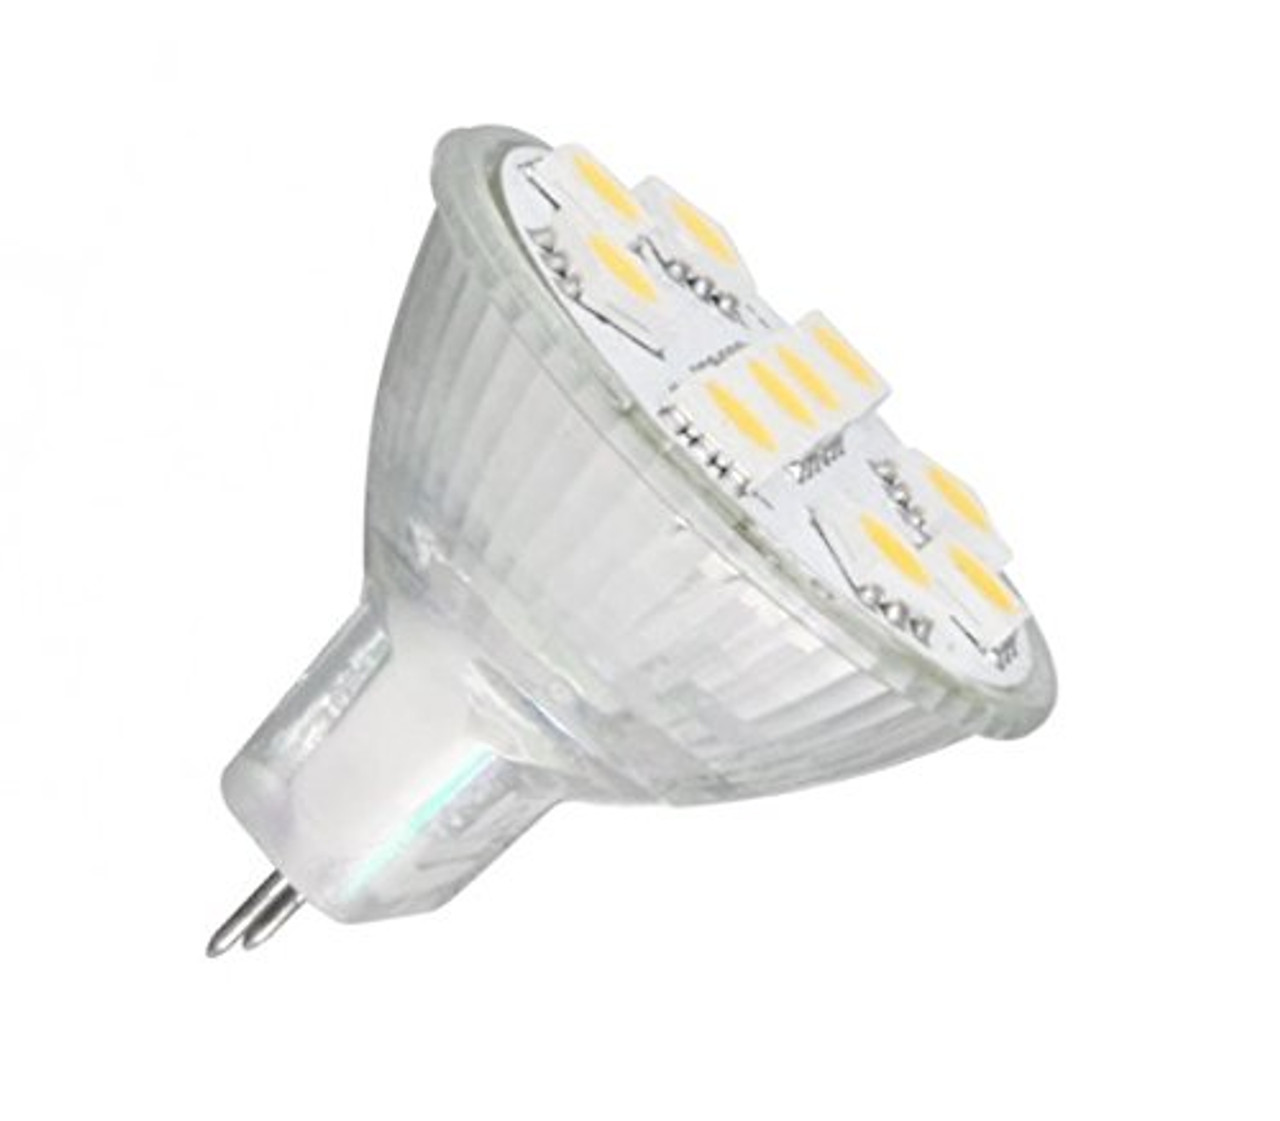 Anyray MR11 LED Light Bulb GU4 Base Flood Beam lamp Soft White White)